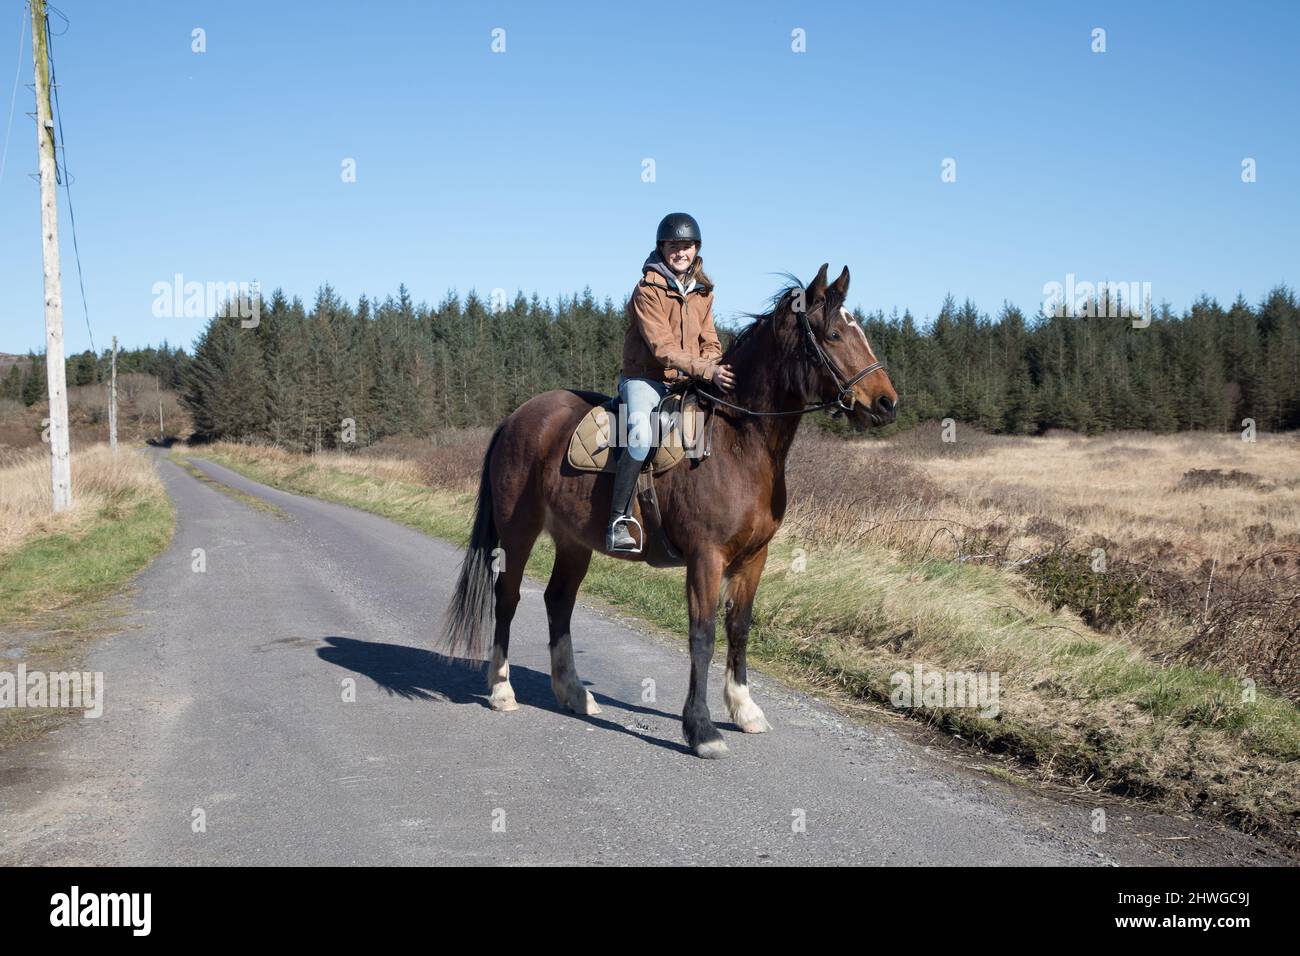 Schull, Cork, Irlande. 05th mars 2022. Niamh O'Carroll sur son cheval Tess comme ils vont pour une promenade sur une route de campagne près de Schull, Co. Cork, Irlande. - Crédit; David Creedon / Alamy Live News Banque D'Images